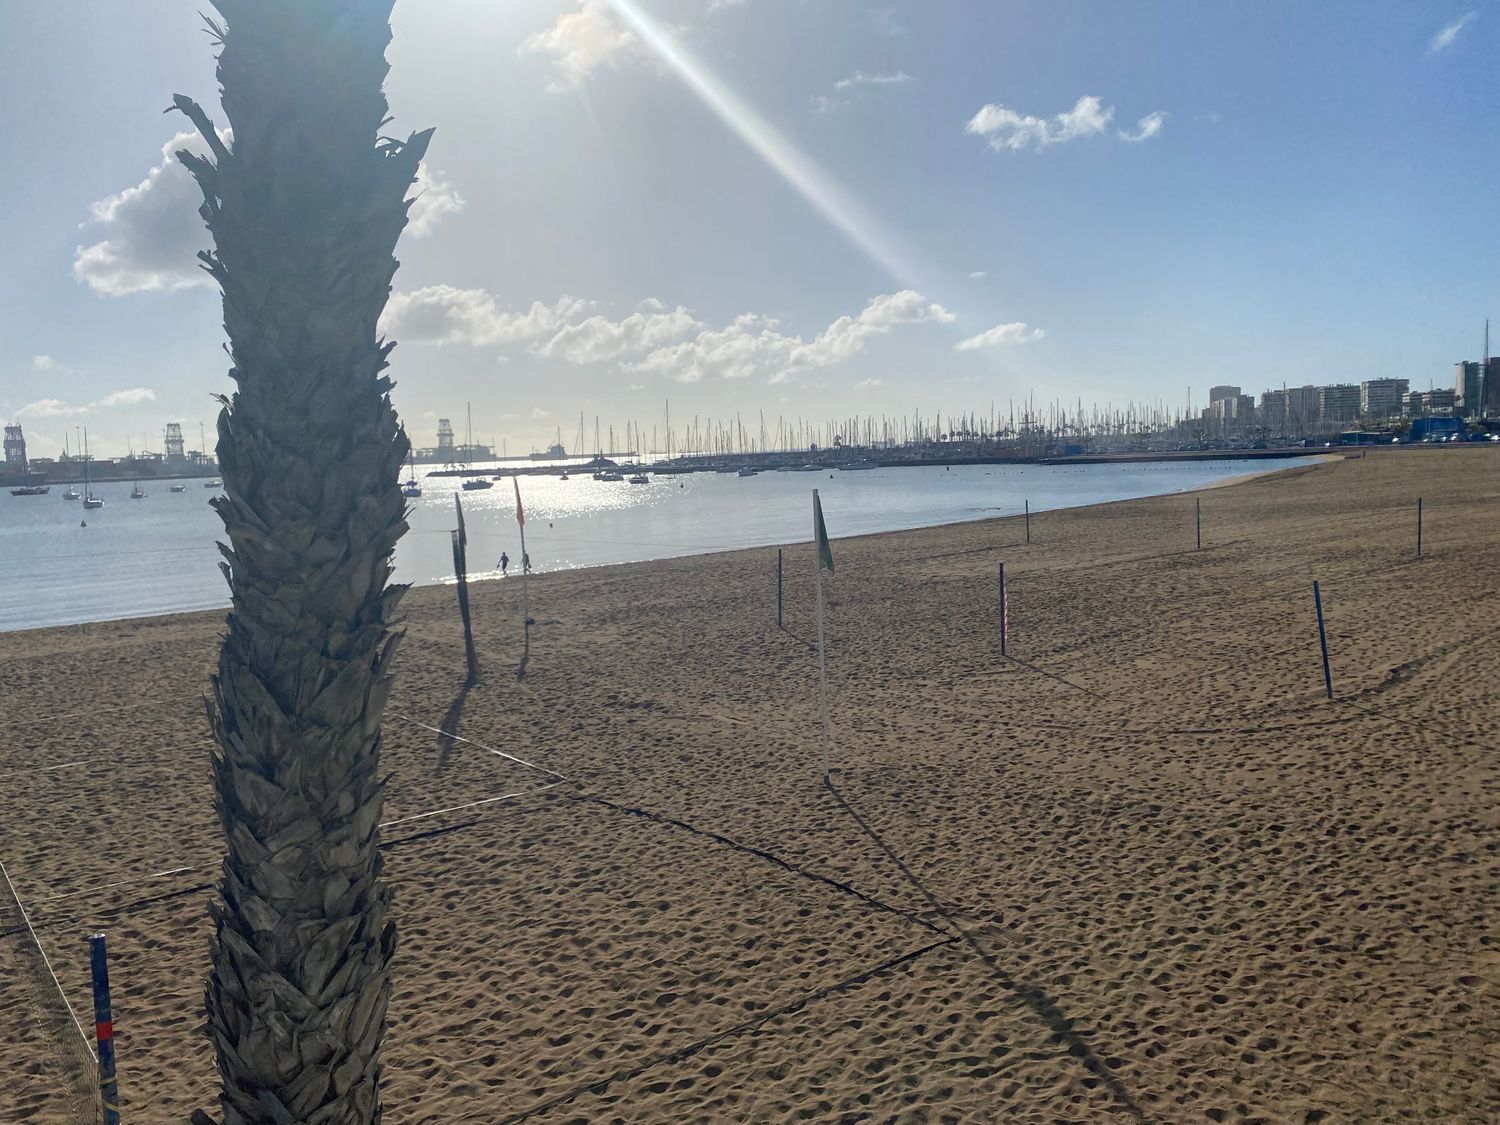 Ático dúplex en venta en primera línea de mar en Blasco Ibañez,en Las Palmas de Gran Canaria